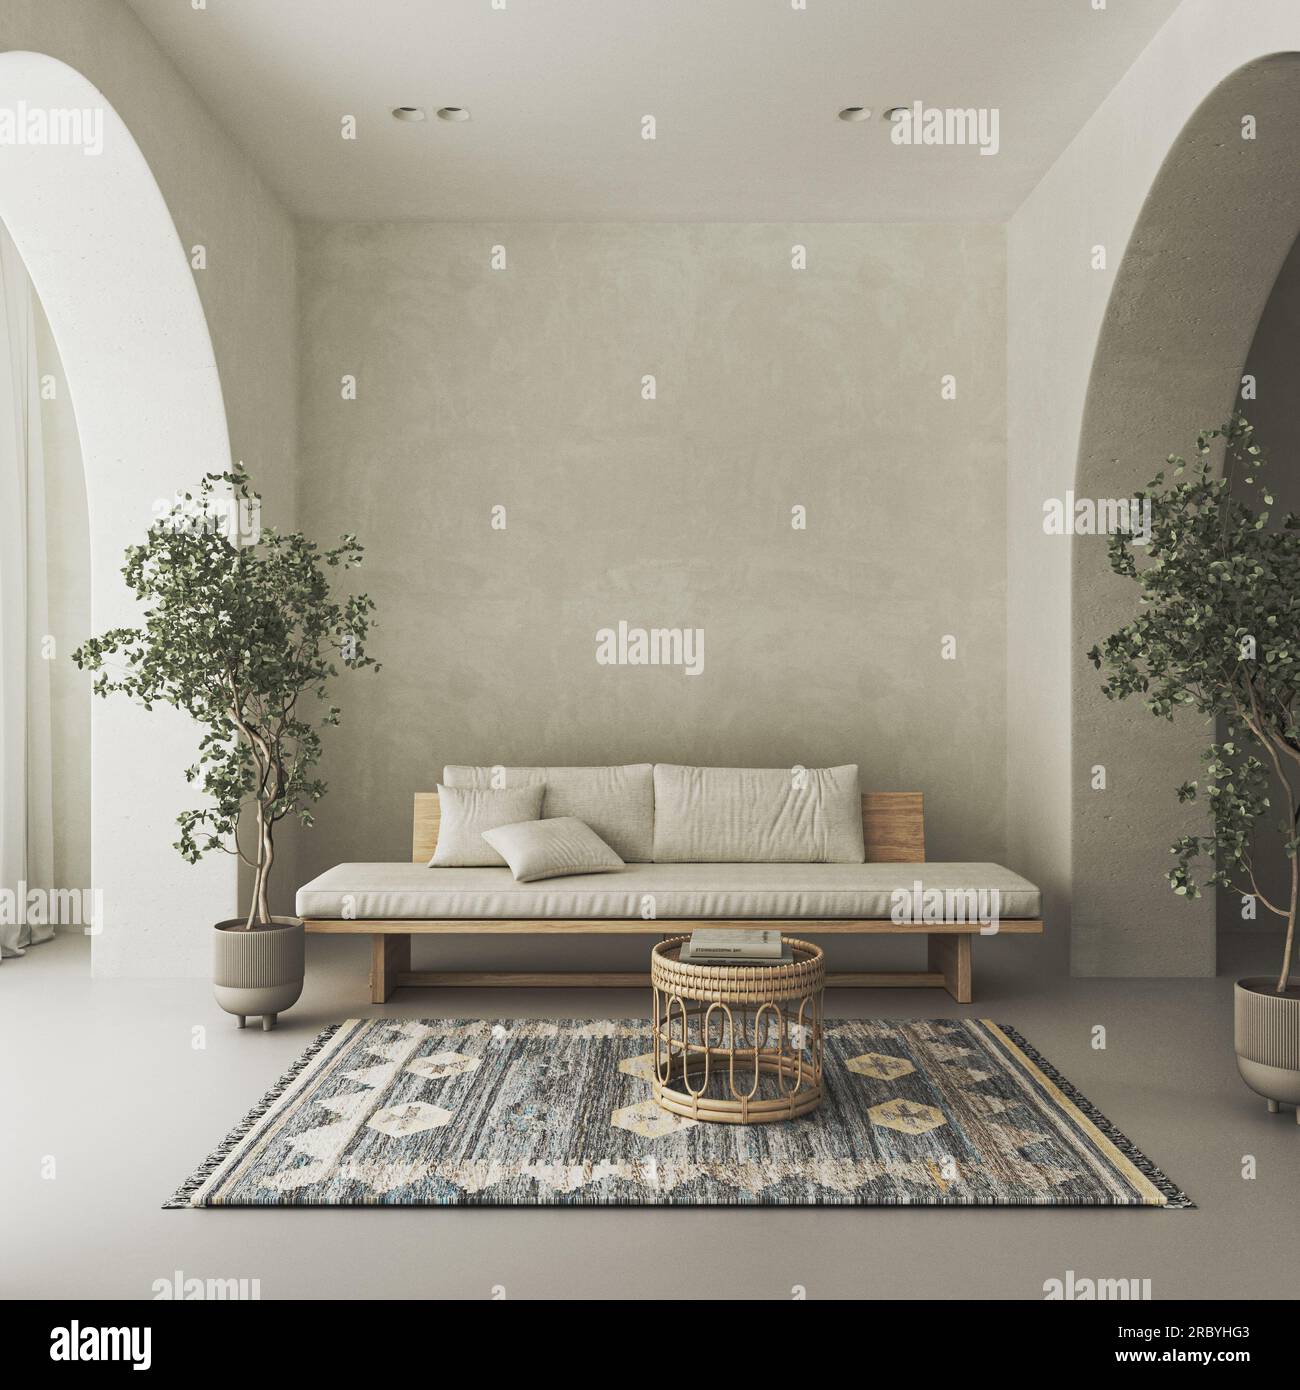 Salon intérieur conceptuel avec mur en arc beige stuc. Banc en bois de composition créative avec table en osier de couleur pastel. Maquette vide Banque D'Images